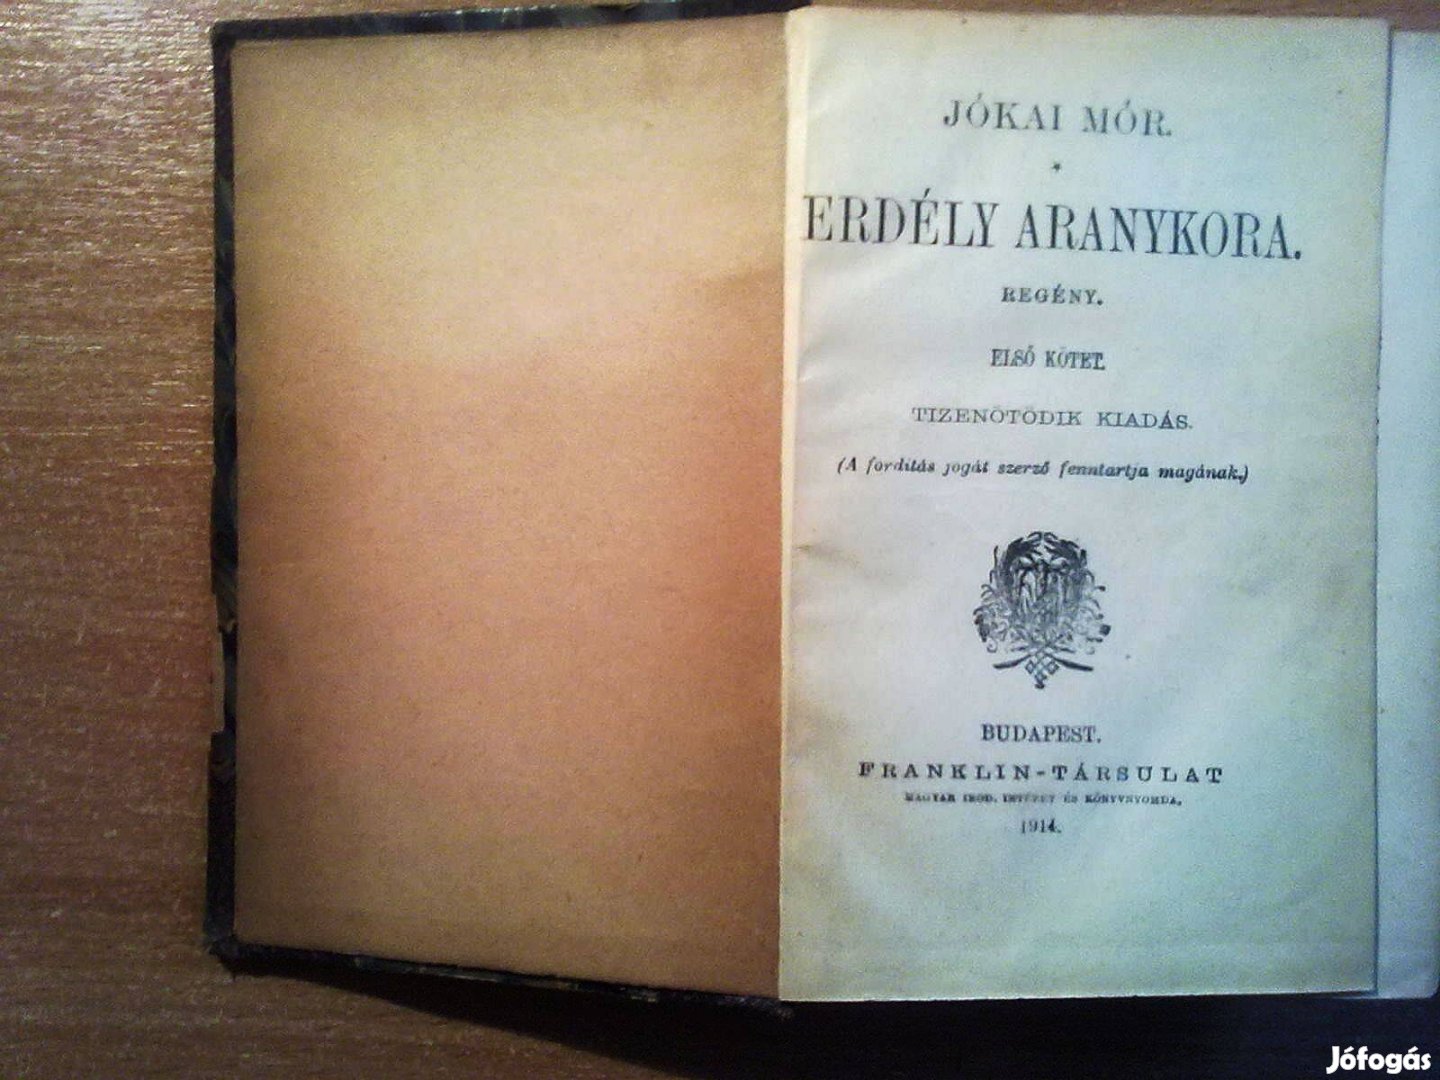 Jókai Mór: Erdély aranykora I-II. (1914-es kiadás)